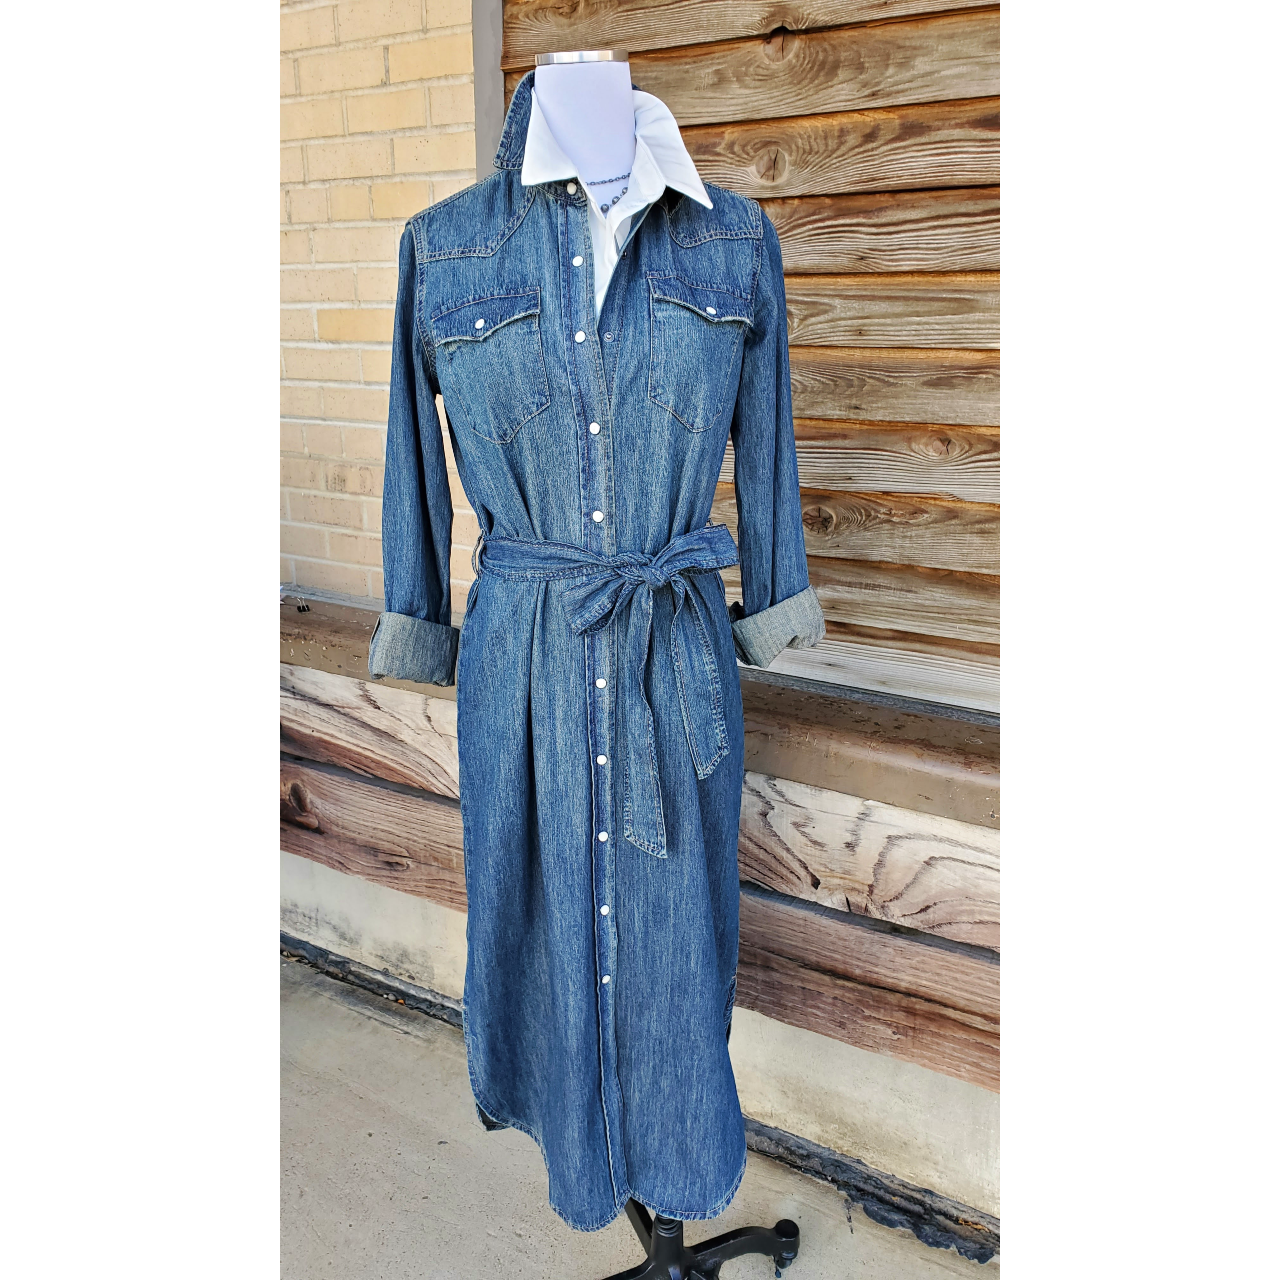 I AM Denim Shirt Women's MEDIUM Blue Button Up Top Long Sleeve Jean | eBay